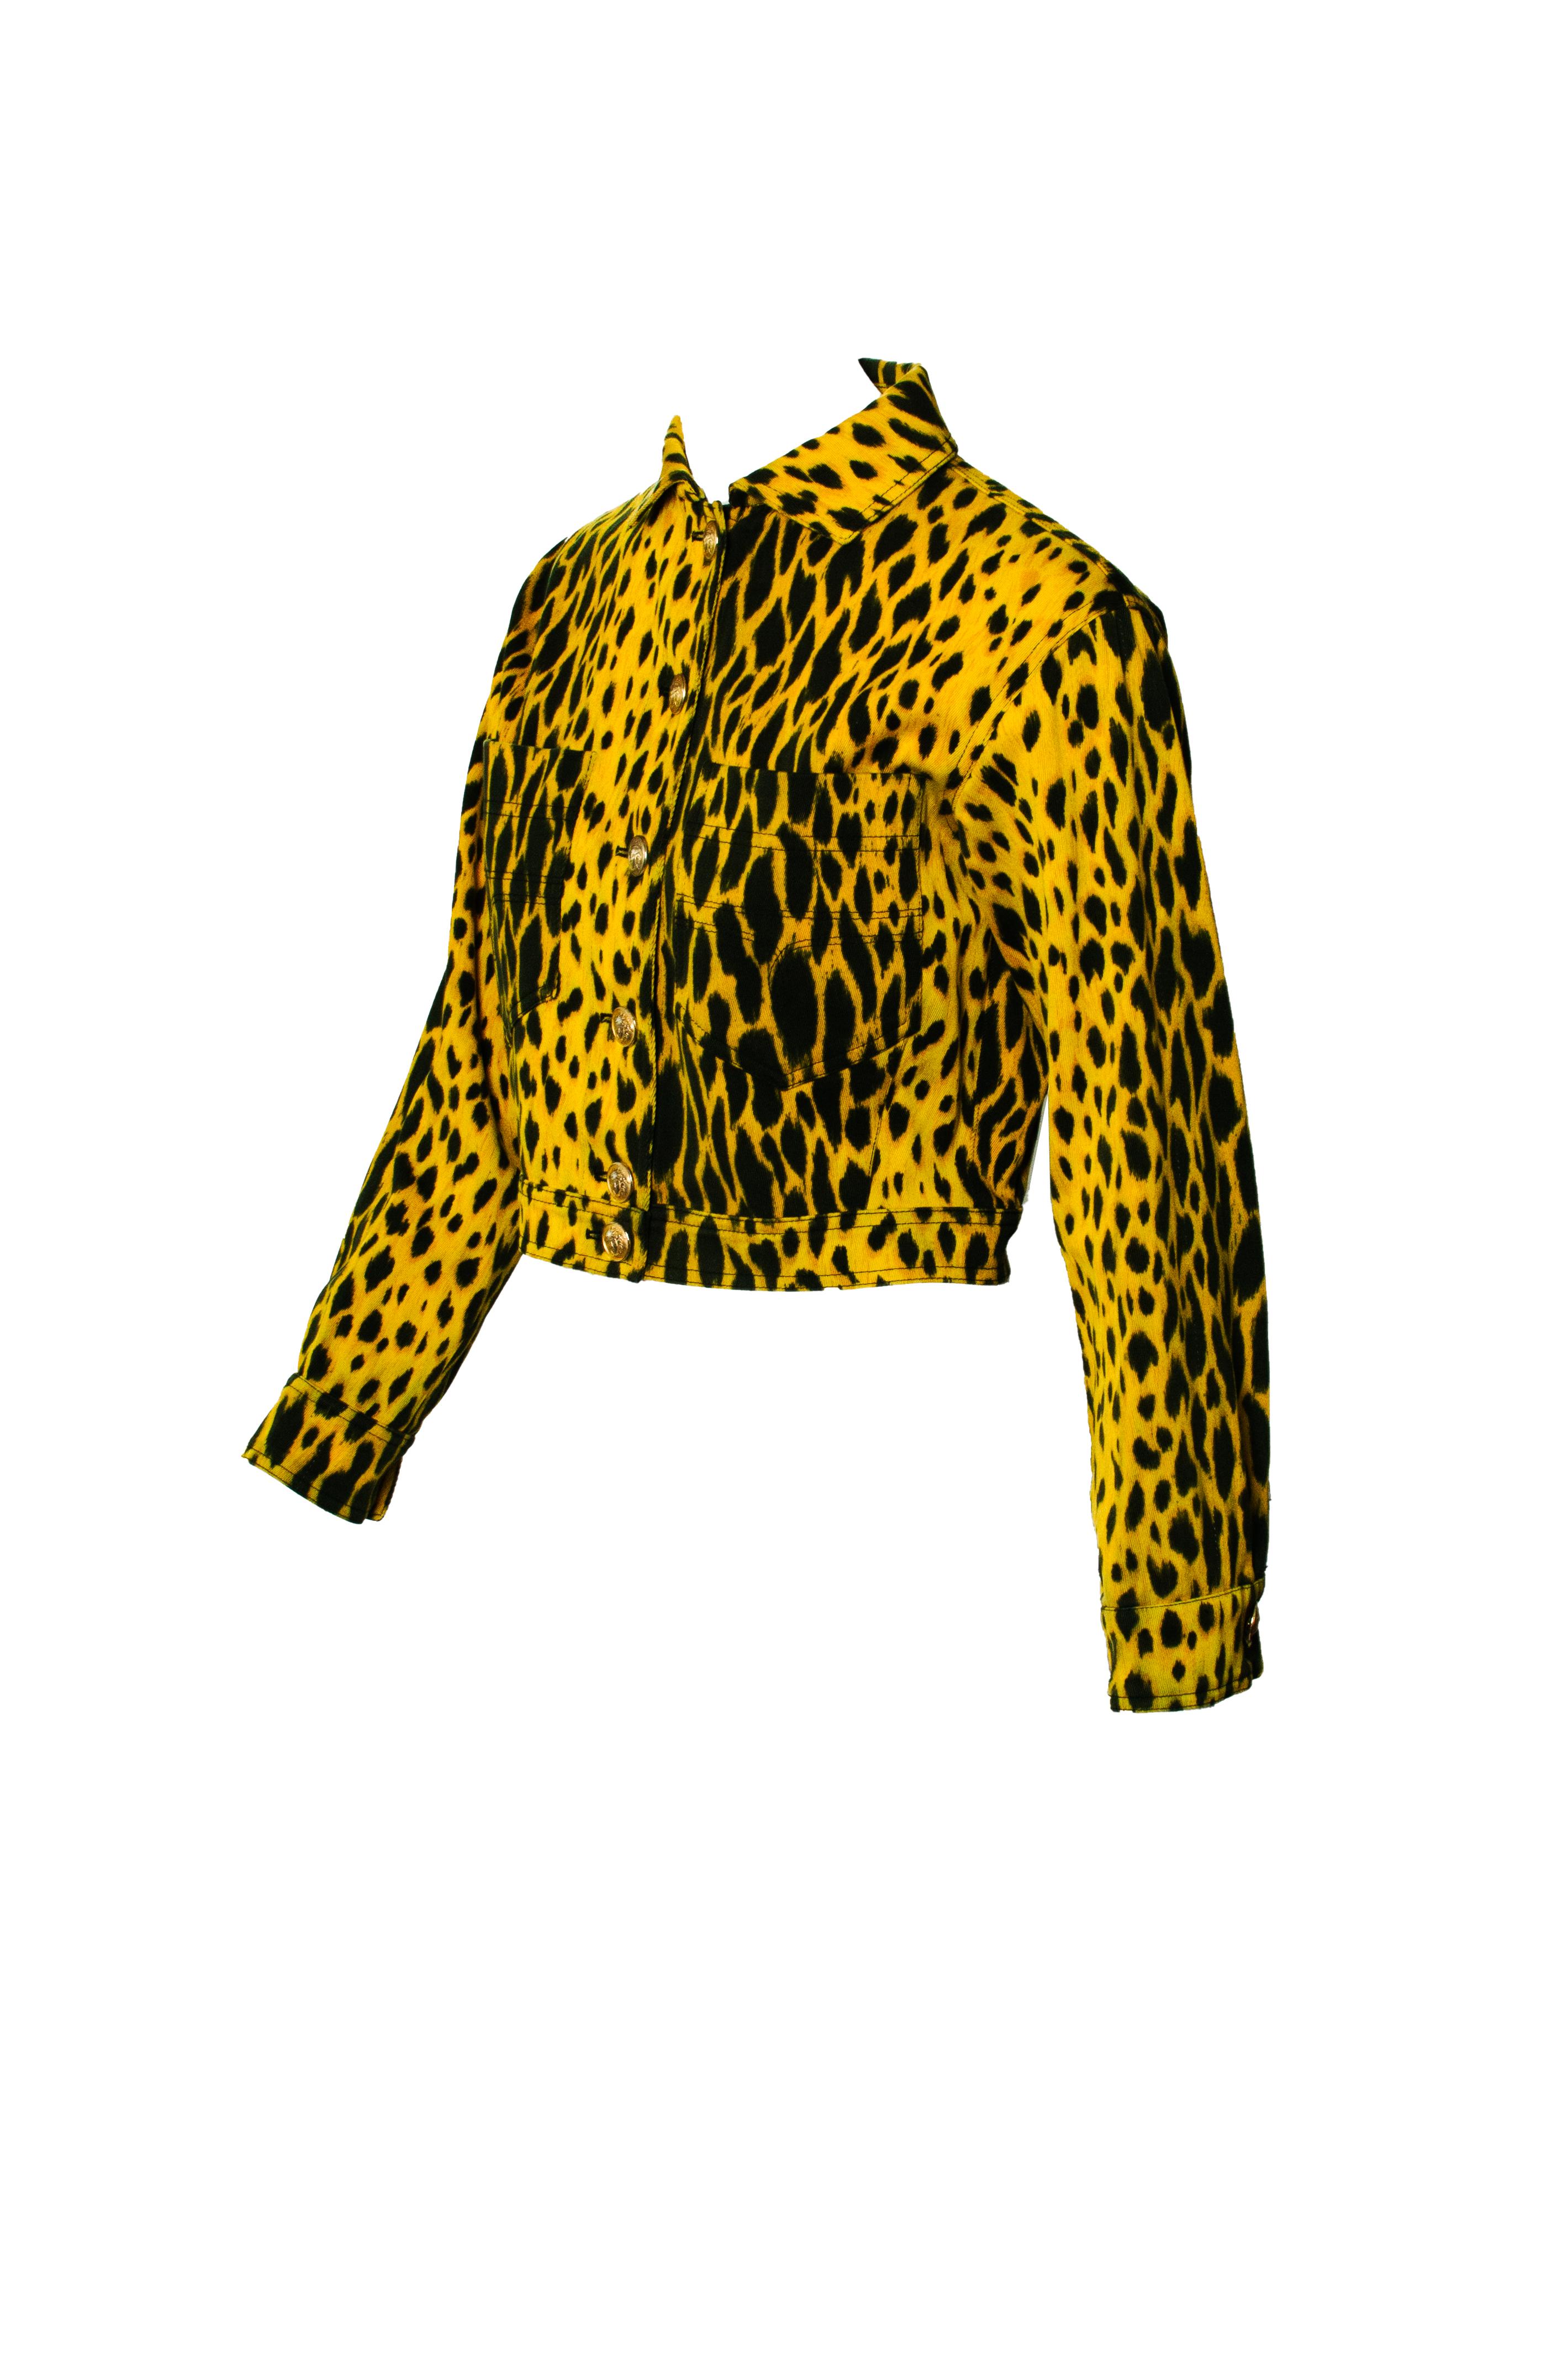 versace leopard jacket